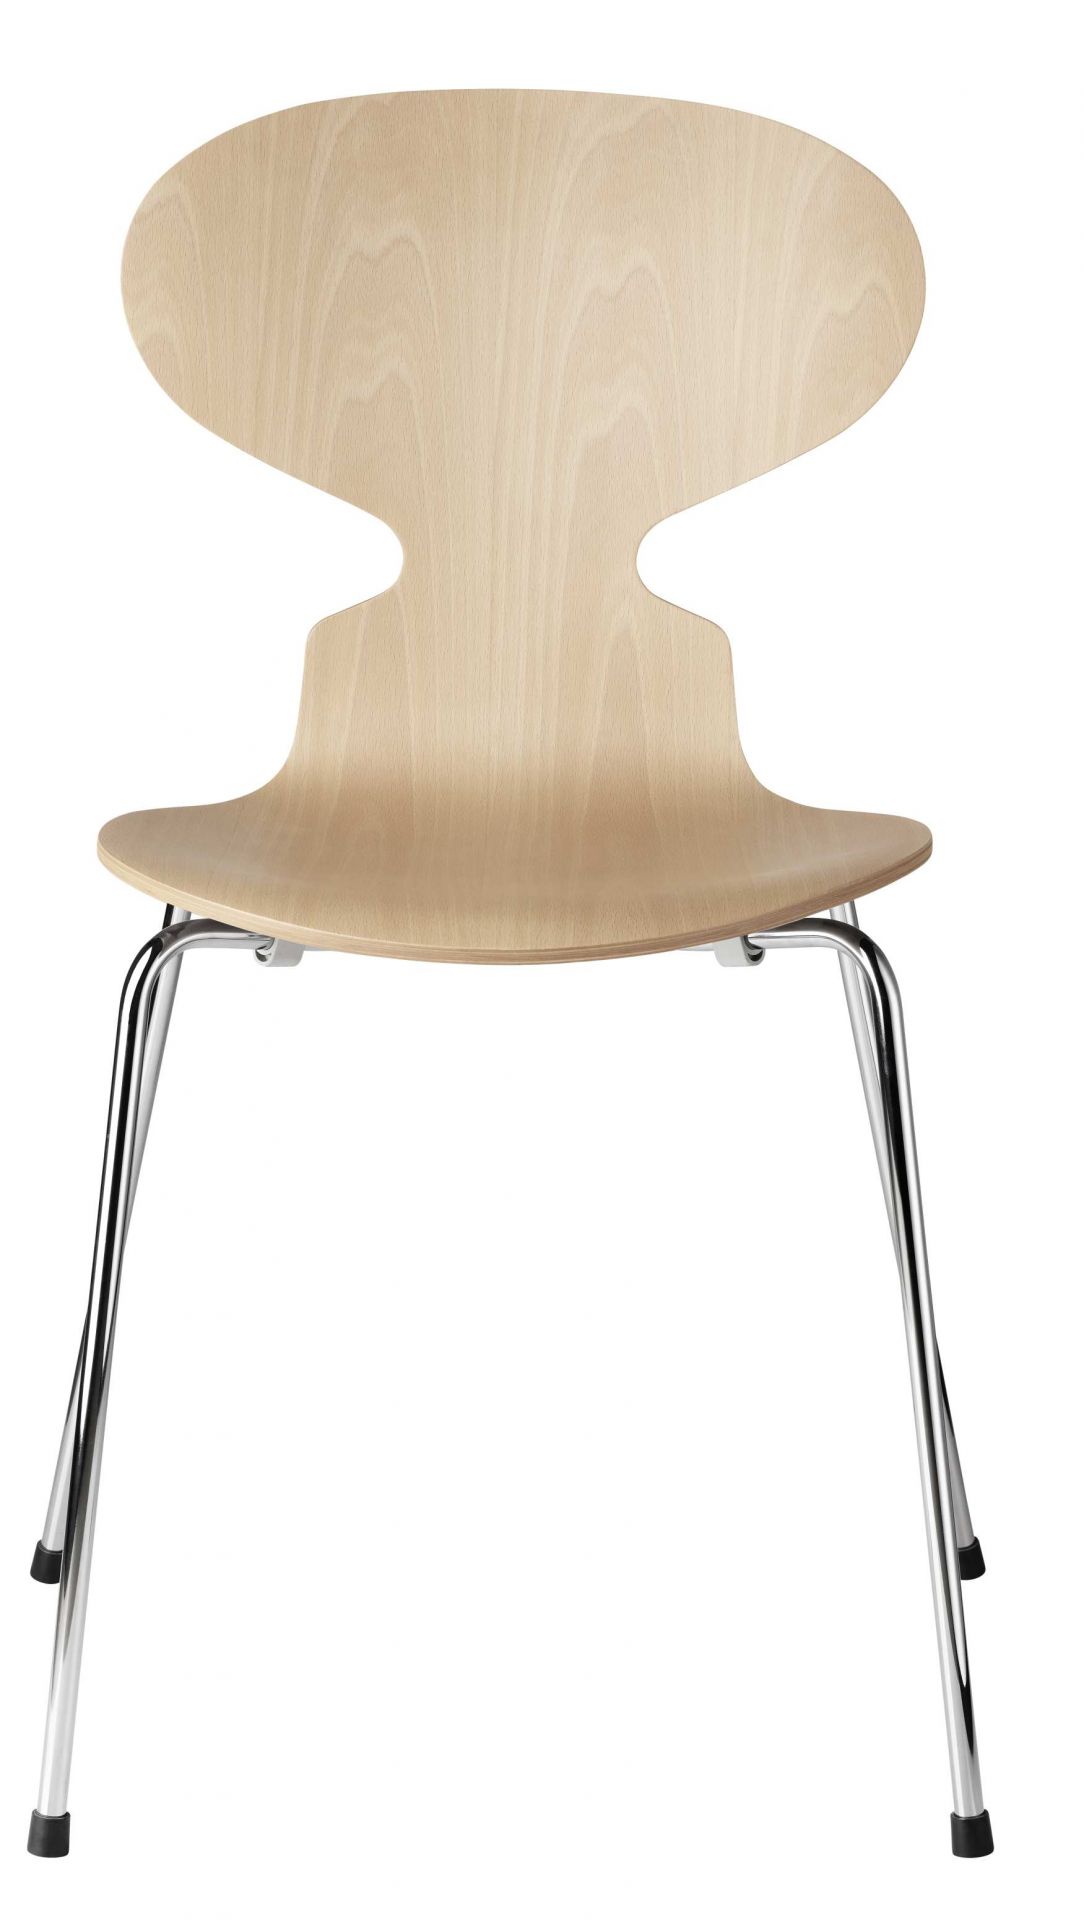 The Ant Chair 3101 4-leg frame Fritz Hansen 